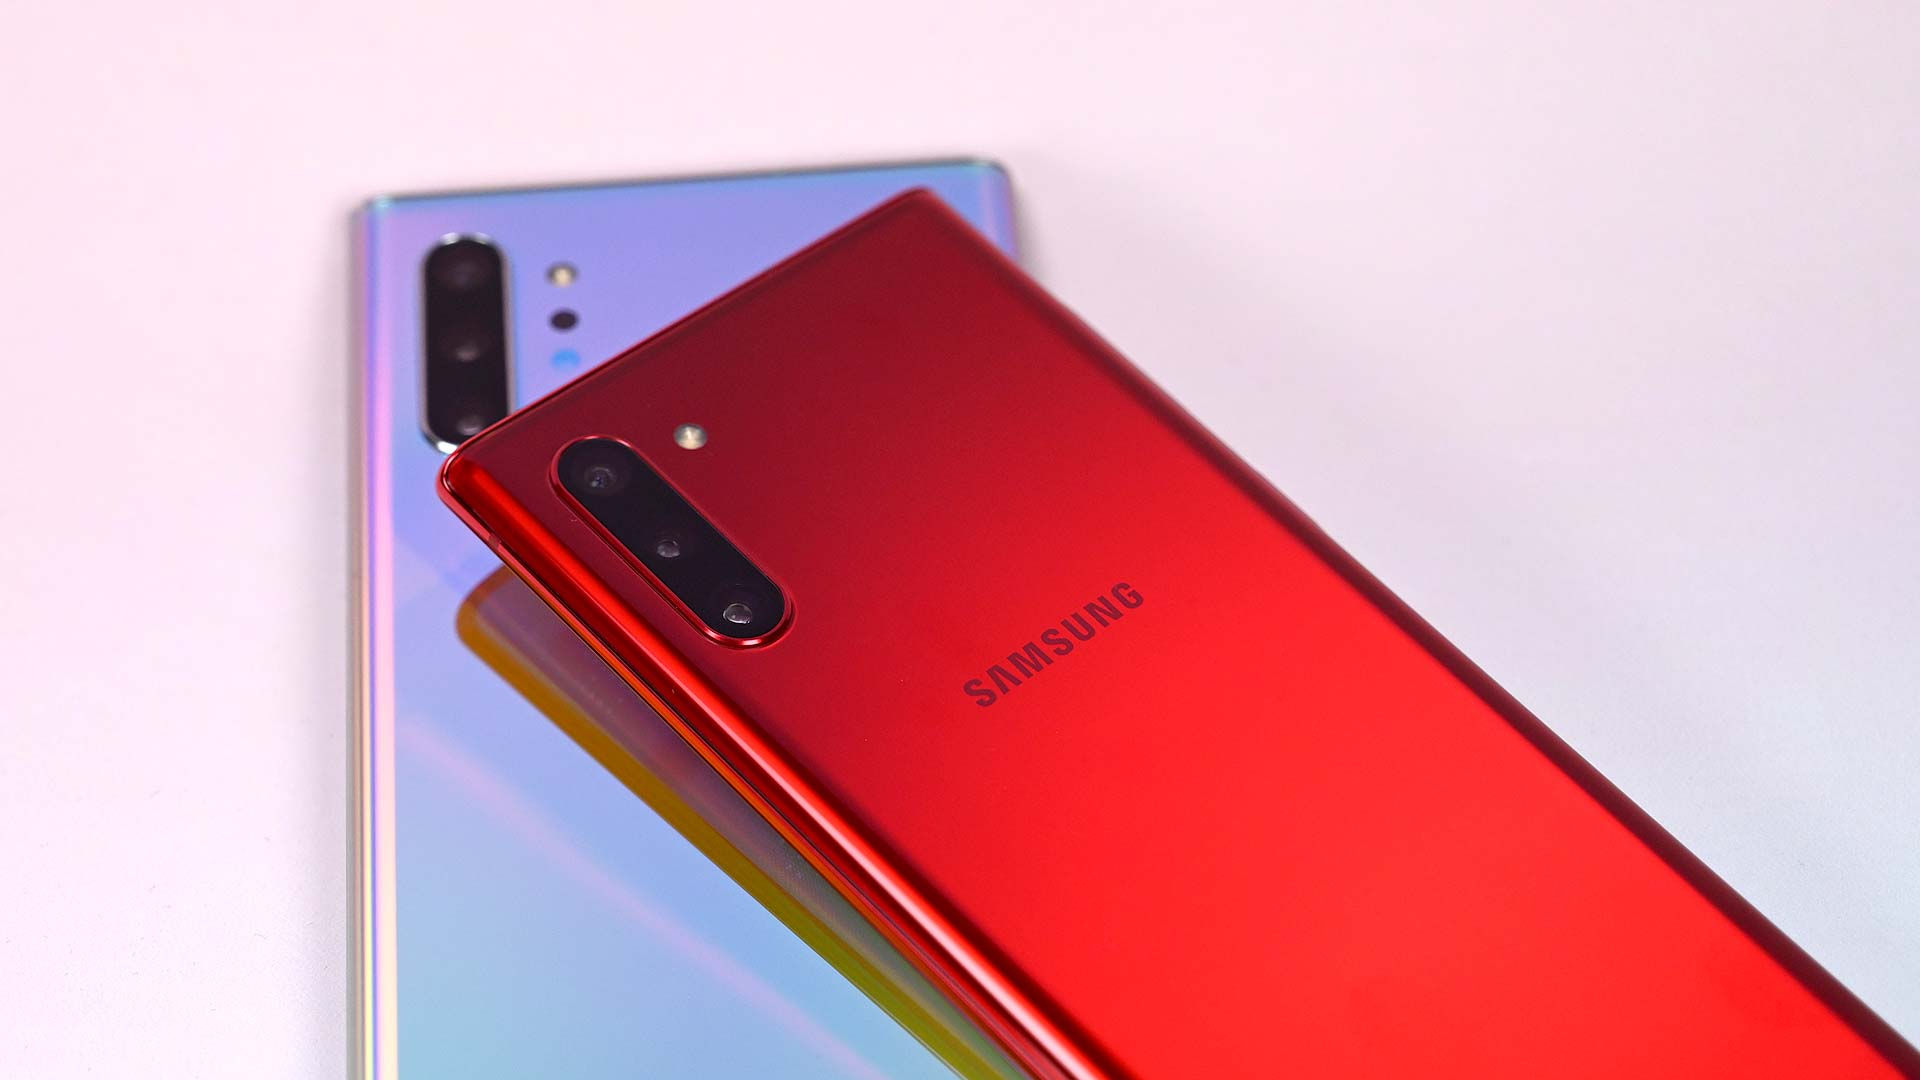   Đây là lần đầu tiên, Galaxy Note10 màu đỏ xuất hiện.  